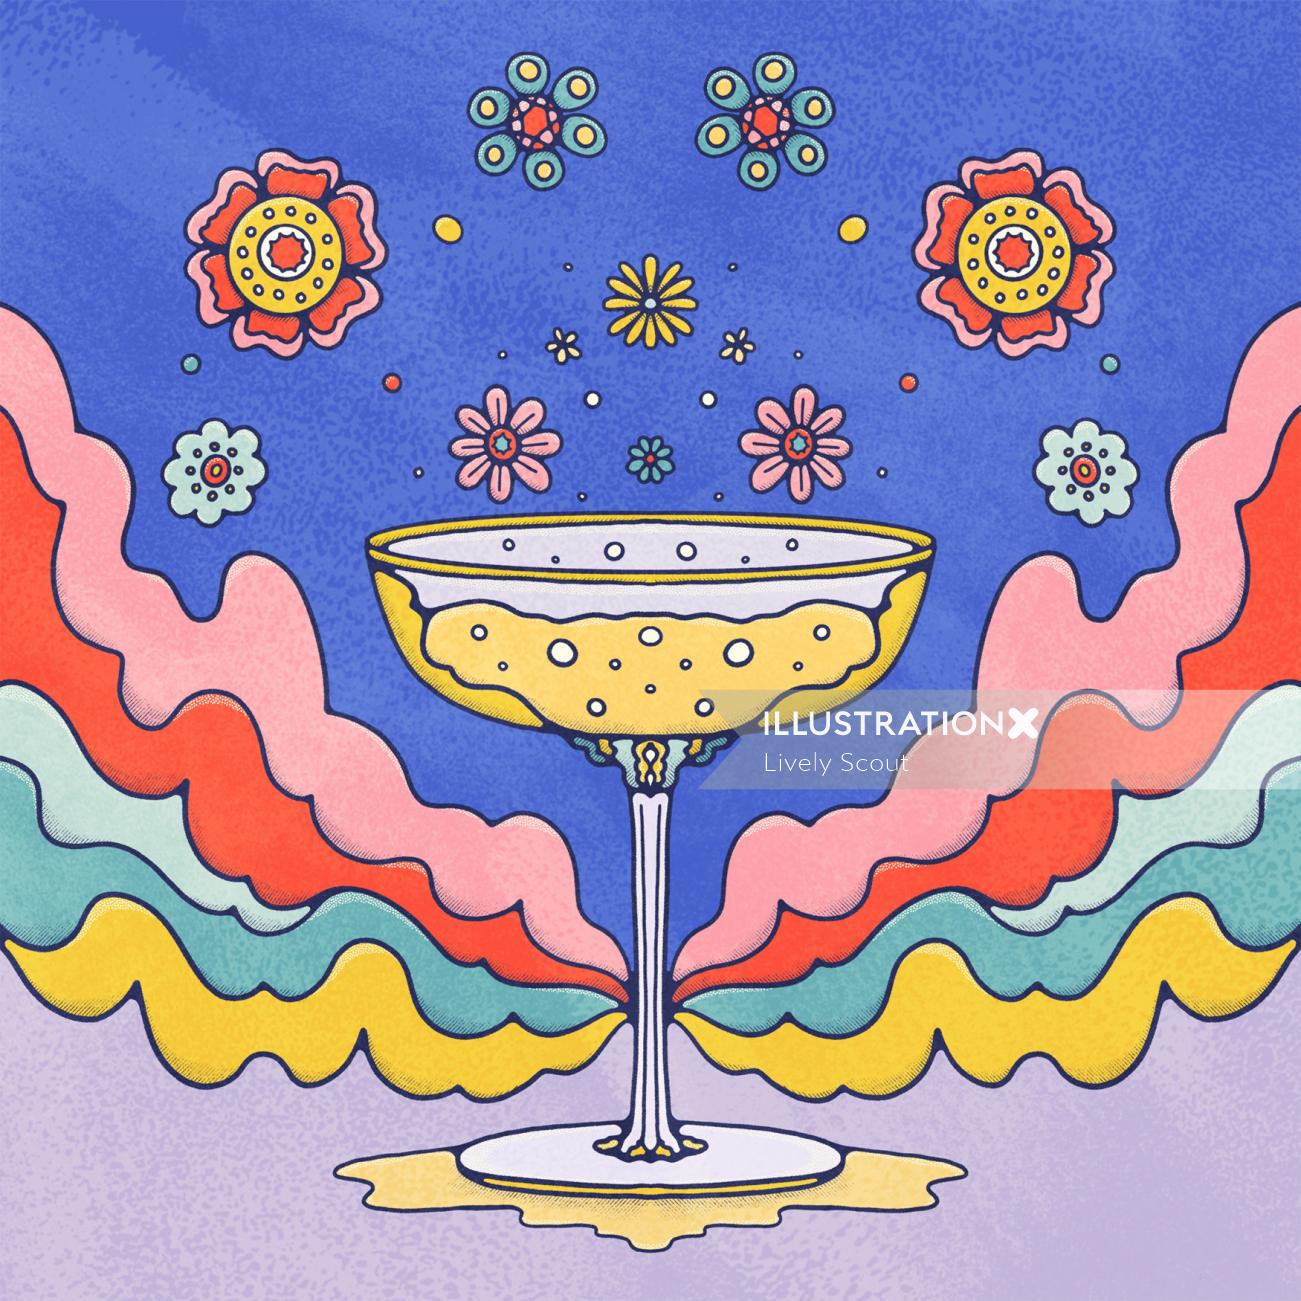 Copa de champán vintage con un telón de fondo psicodélico y floral